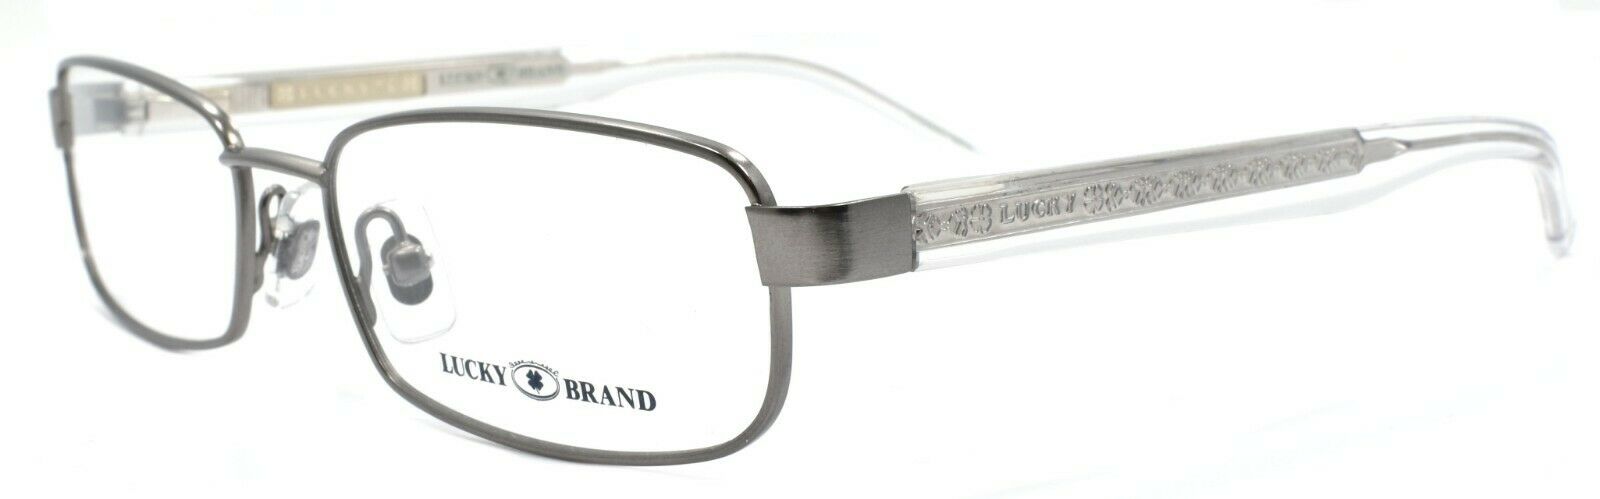 1-LUCKY BRAND Zipper Eyeglasses Frames SMALL 50-15-130 Dark Gun + CASE-751286226966-IKSpecs